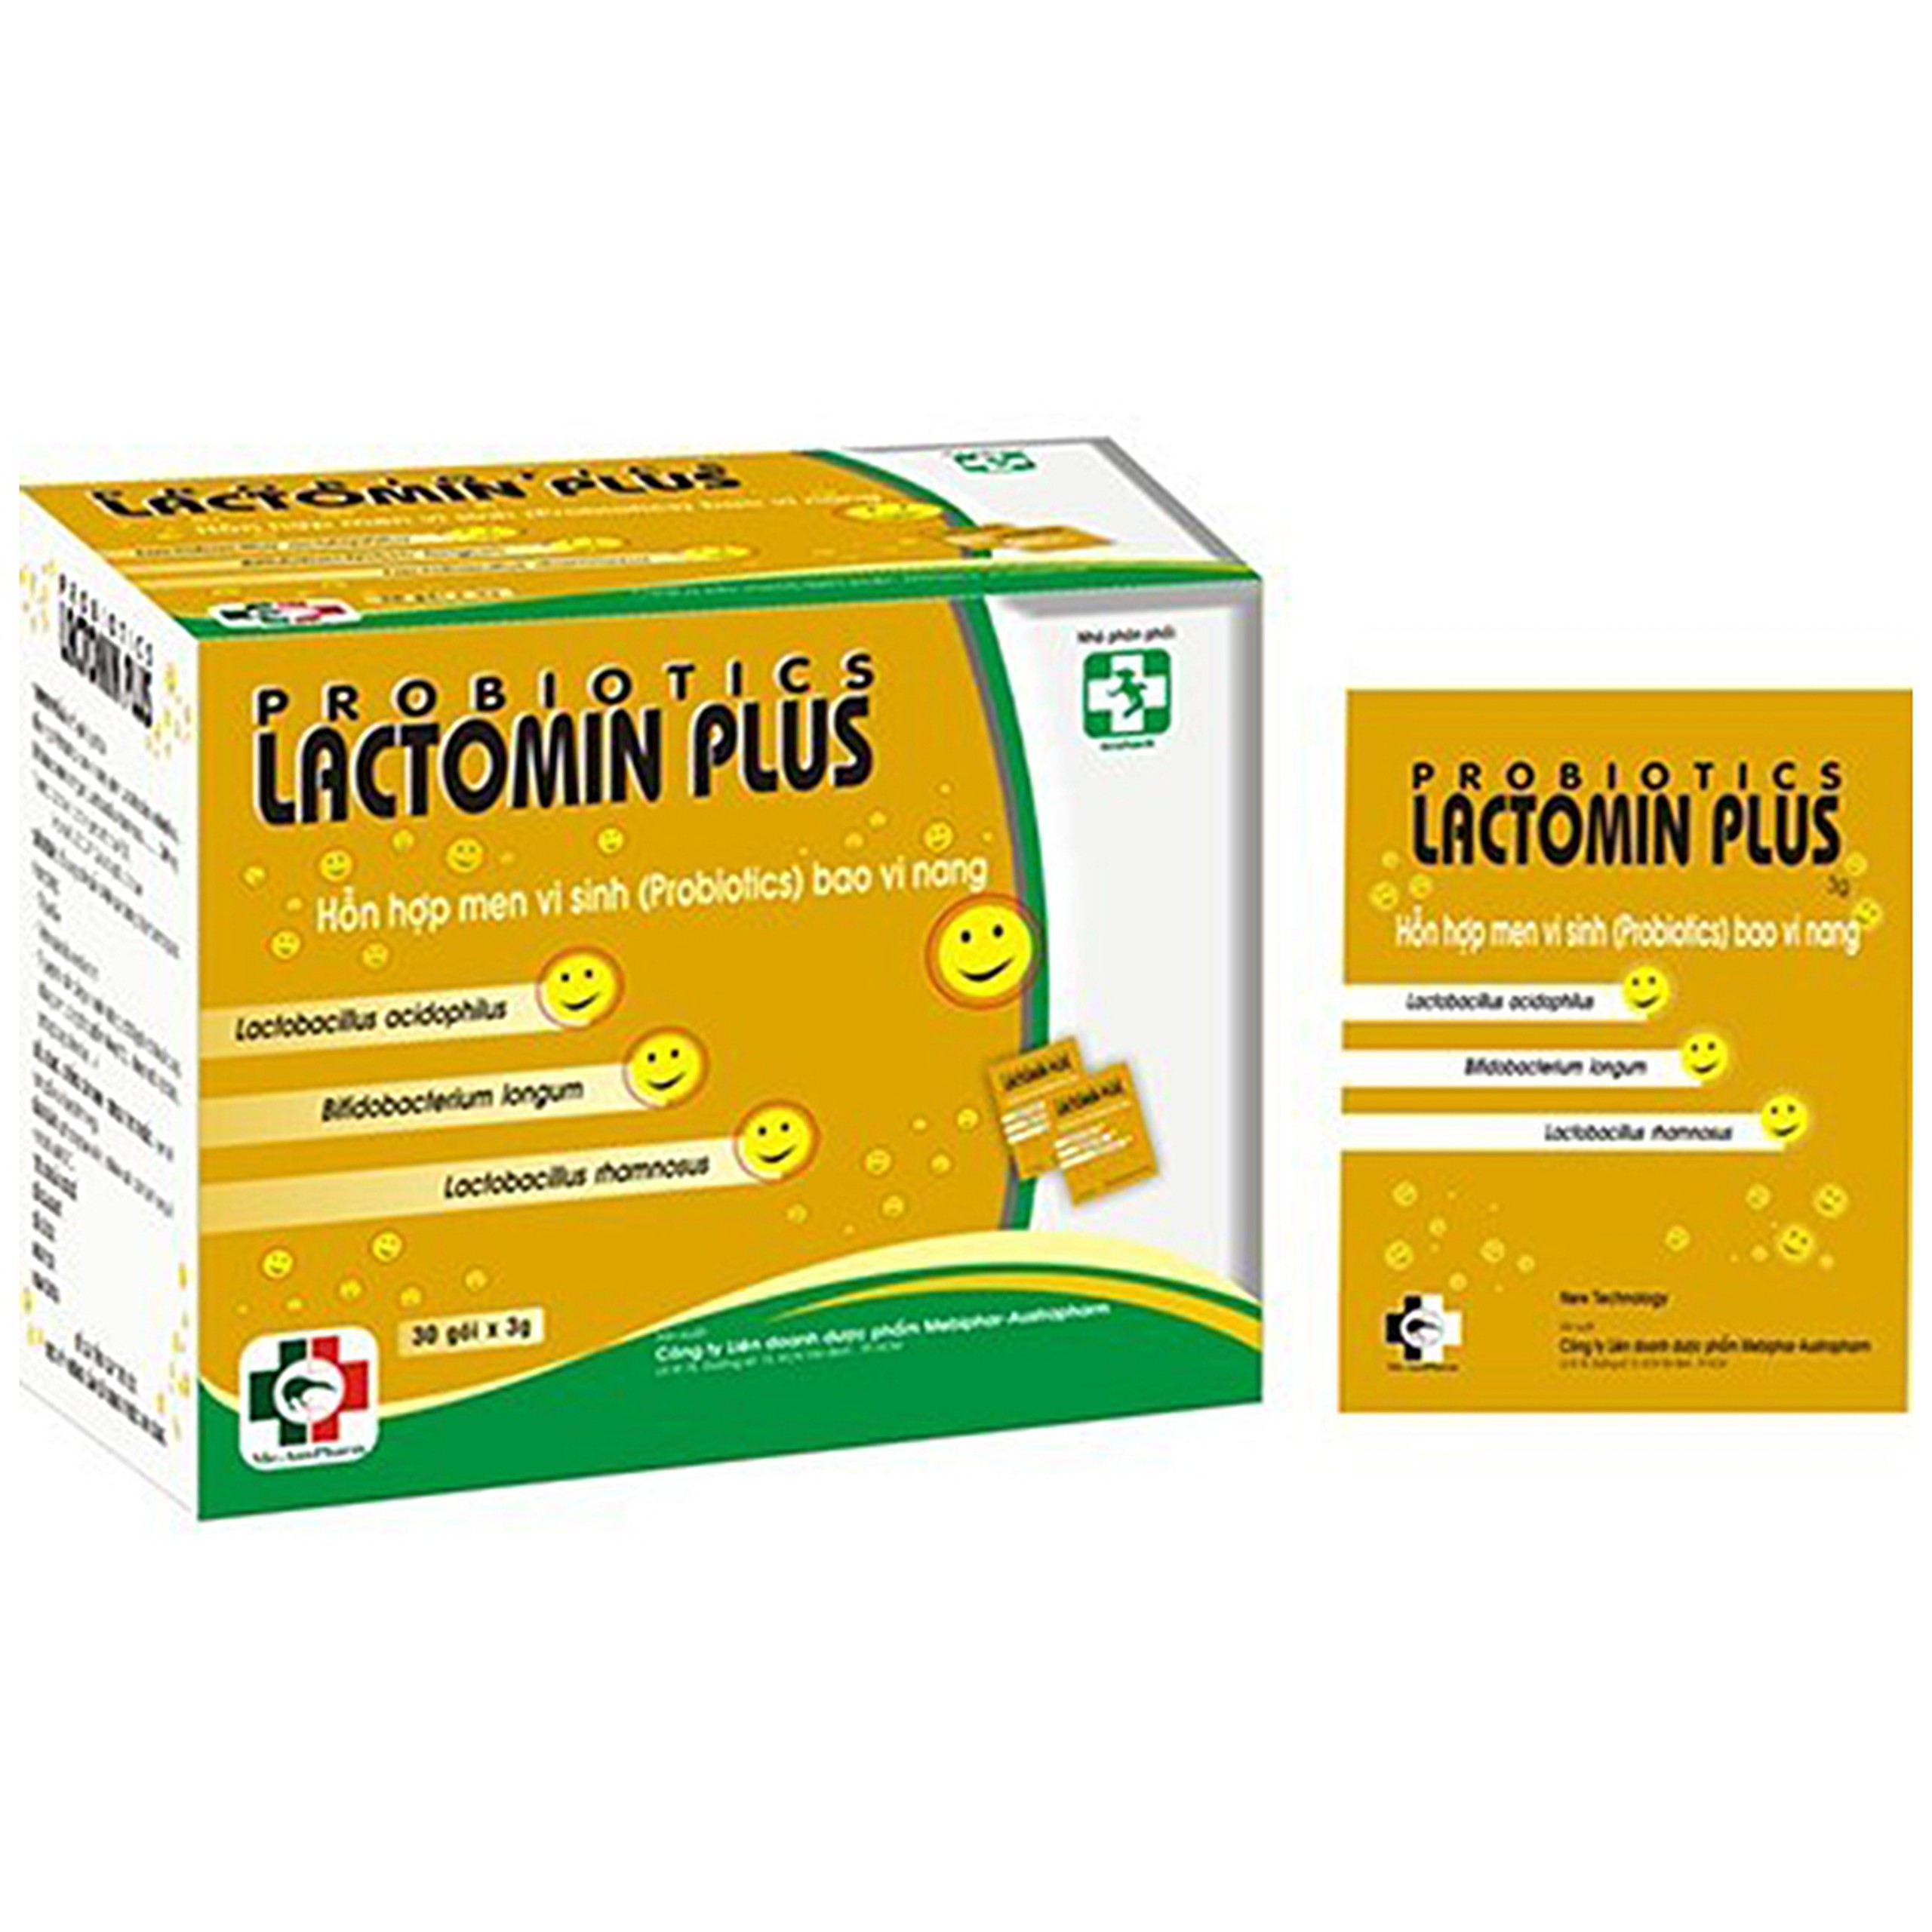 Hỗn hợp men vi sinh Probiotics Lactomin Plus Mebiphar điều trị tiêu chảy, kém tiêu hóa (30 gói)  